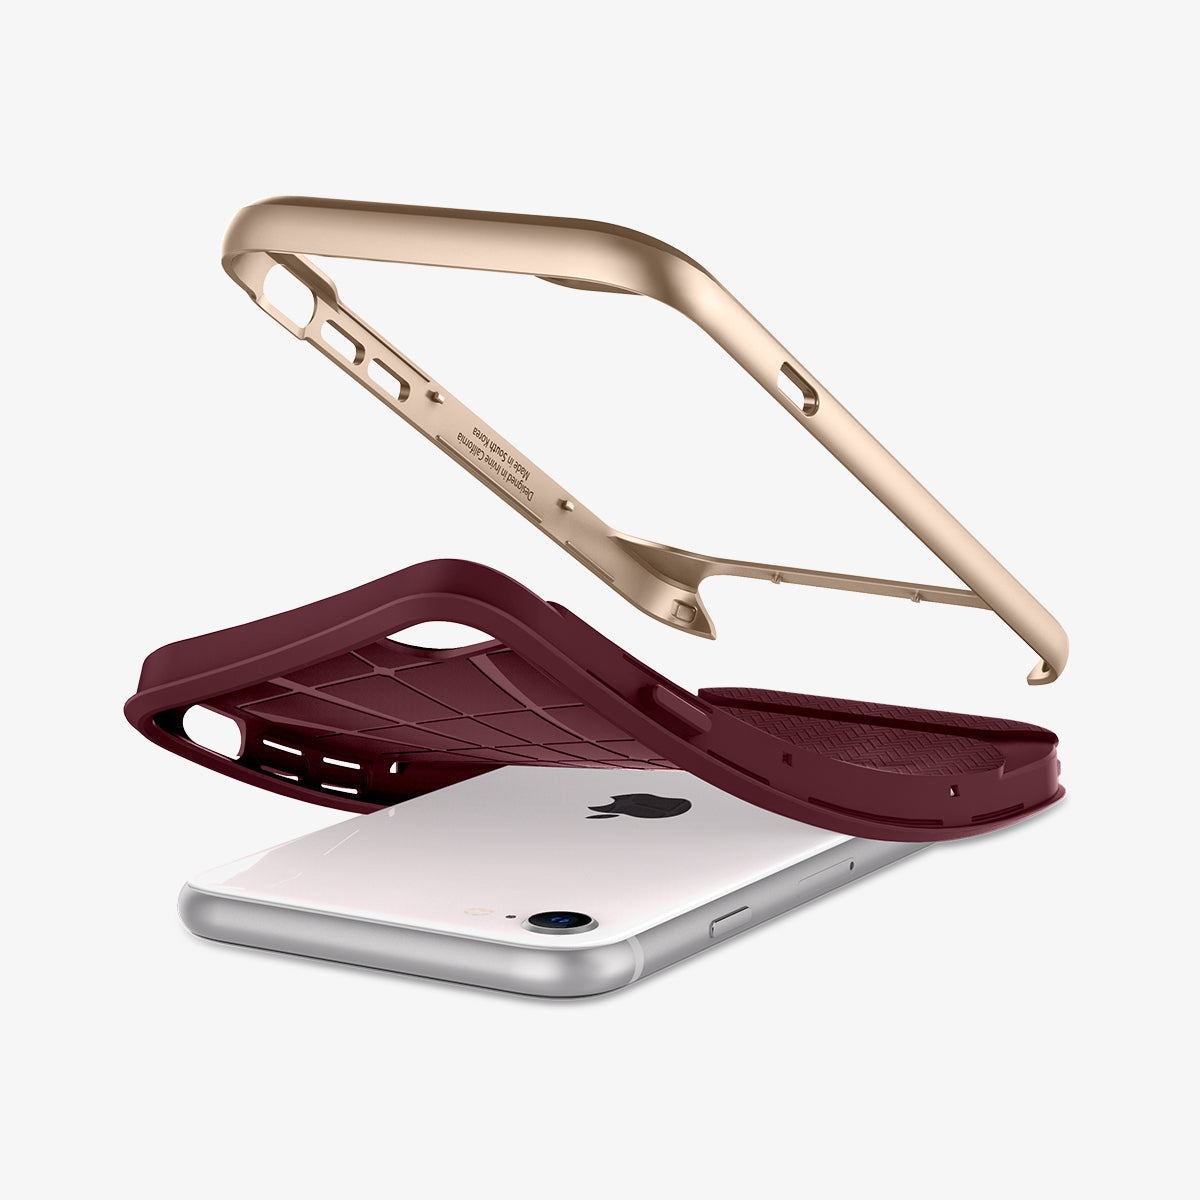 054CS22198 - iPhone SE Neo Hybrid Herringbone case in burgundy showing the breakdown